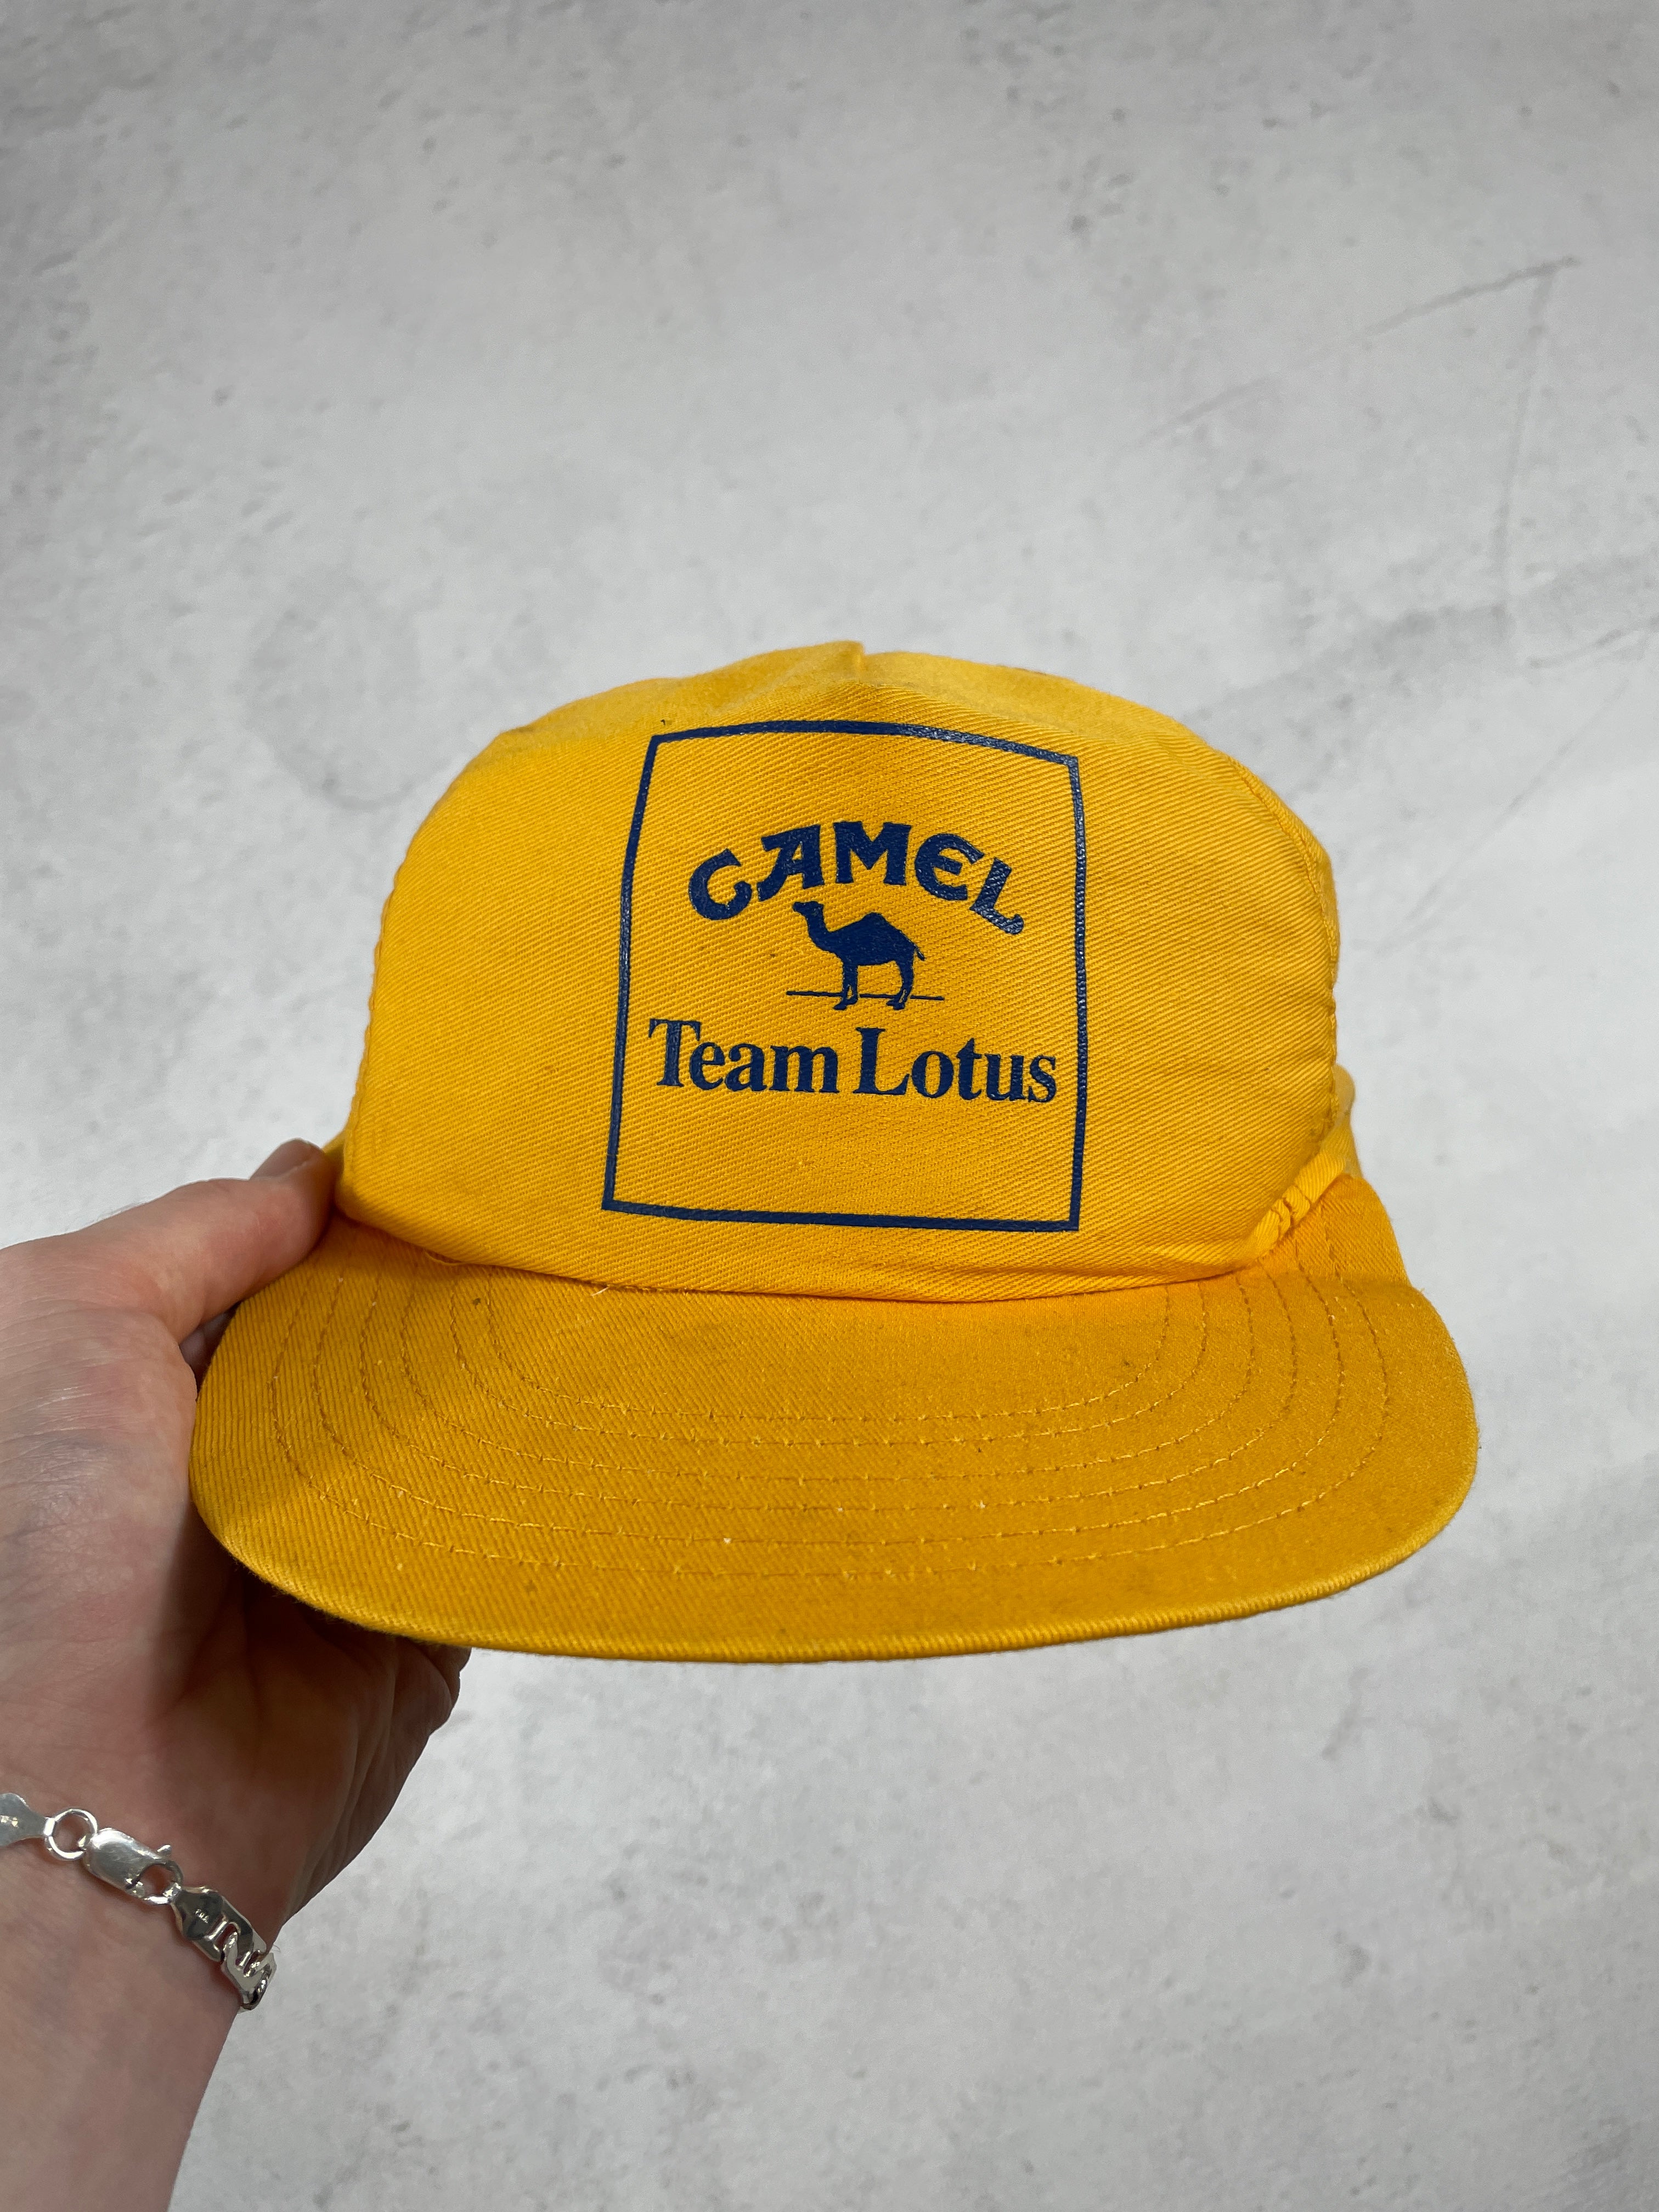 Vintage Camel Cigarettes Snap-Back Hat - Adjustable